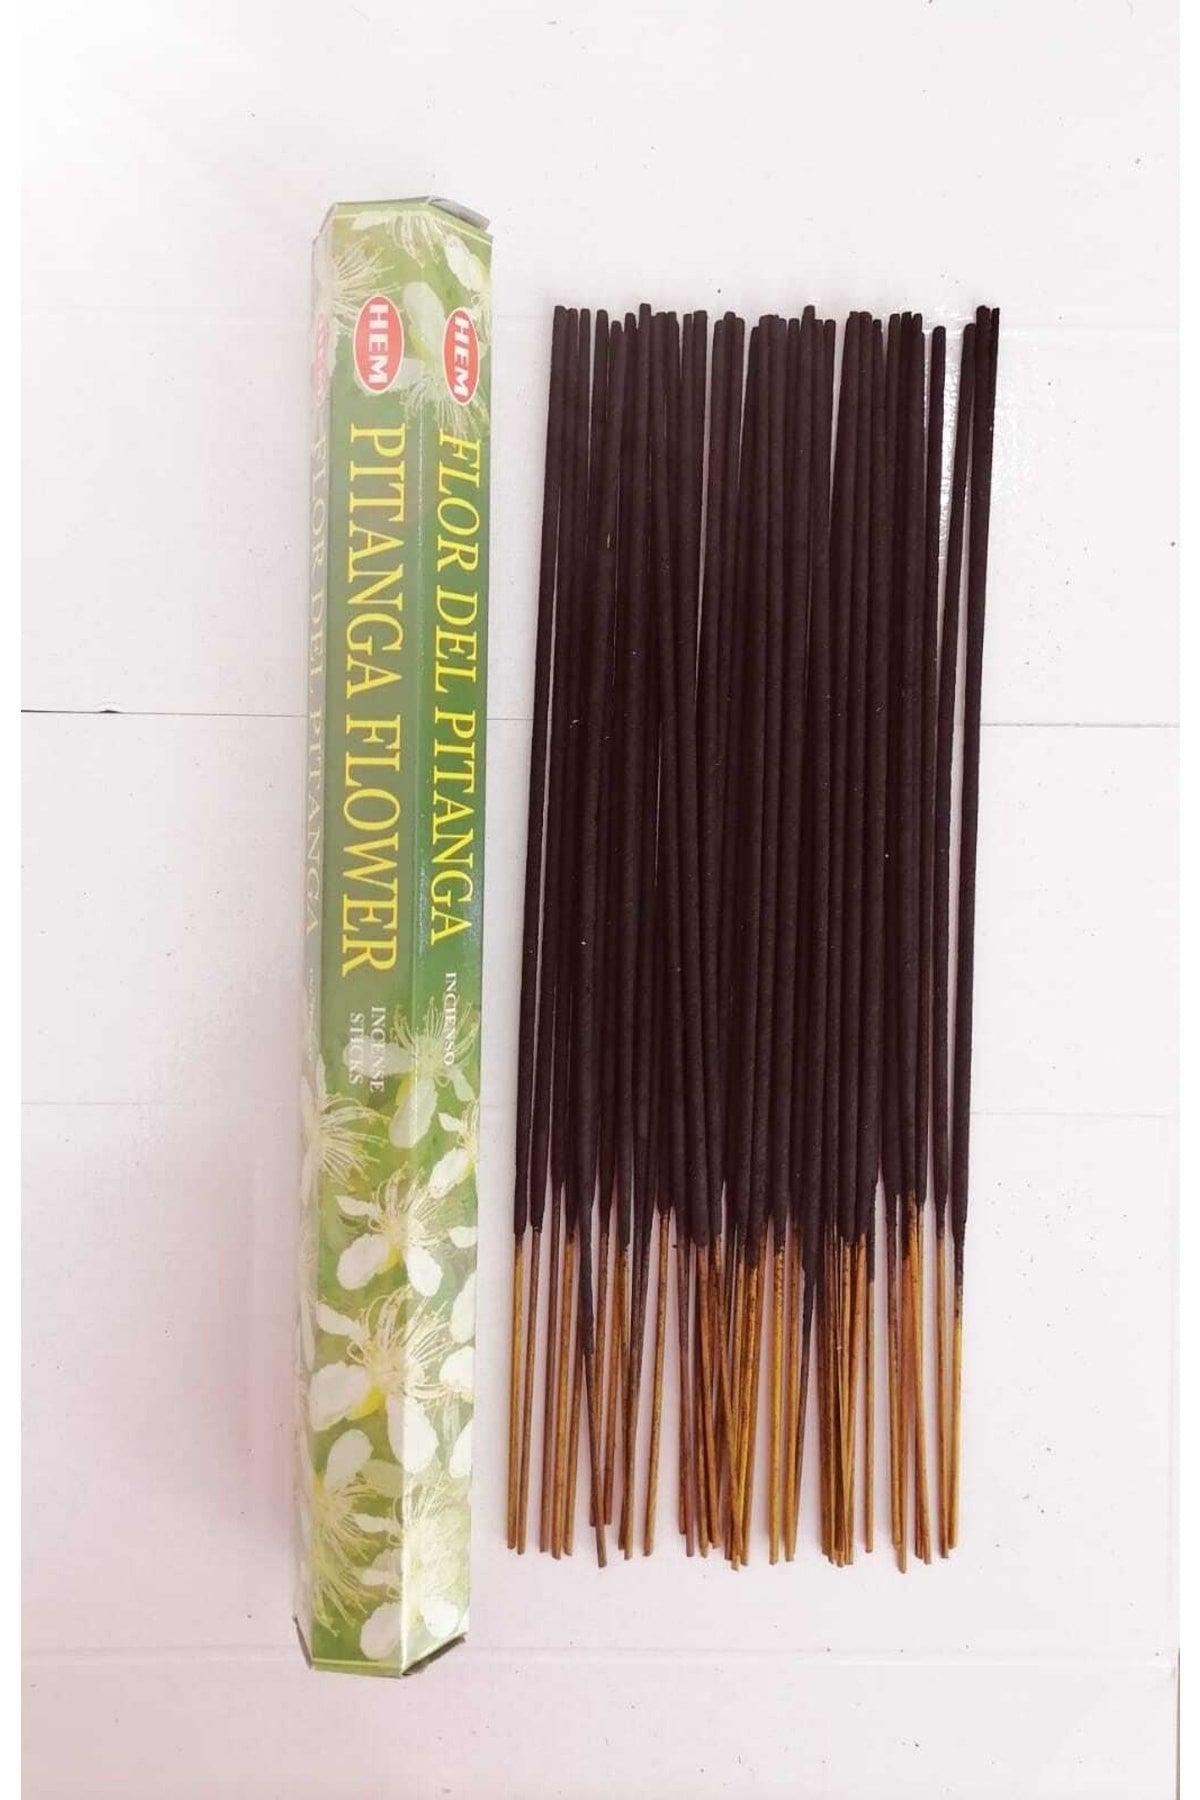 Spitang Flower Scented 1 Box Stick Incense 20 pcs - Swordslife